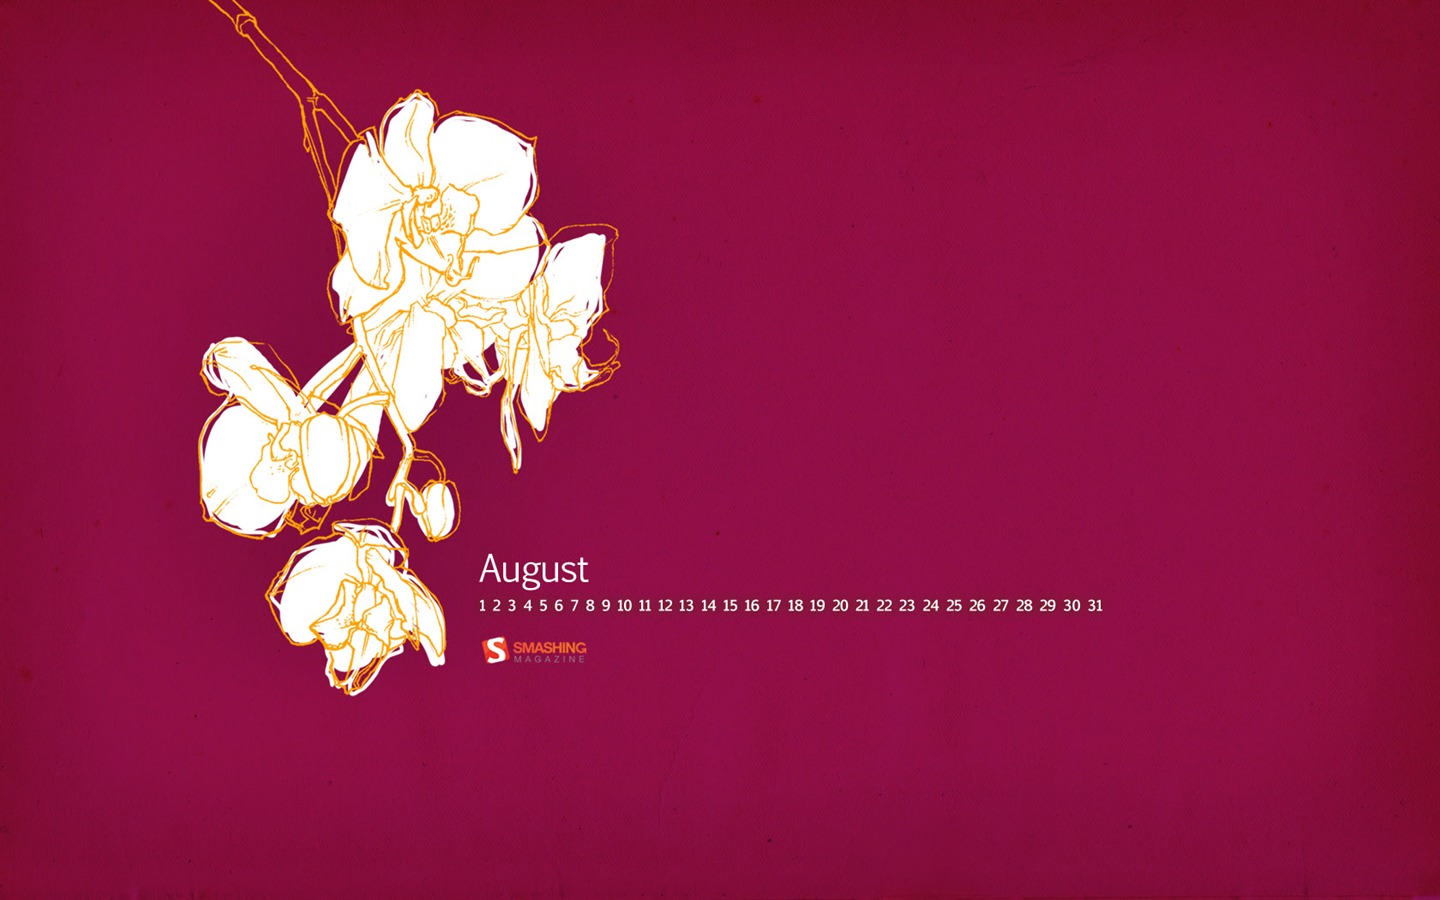 August 2011 calendar wallpaper (2) #6 - 1440x900